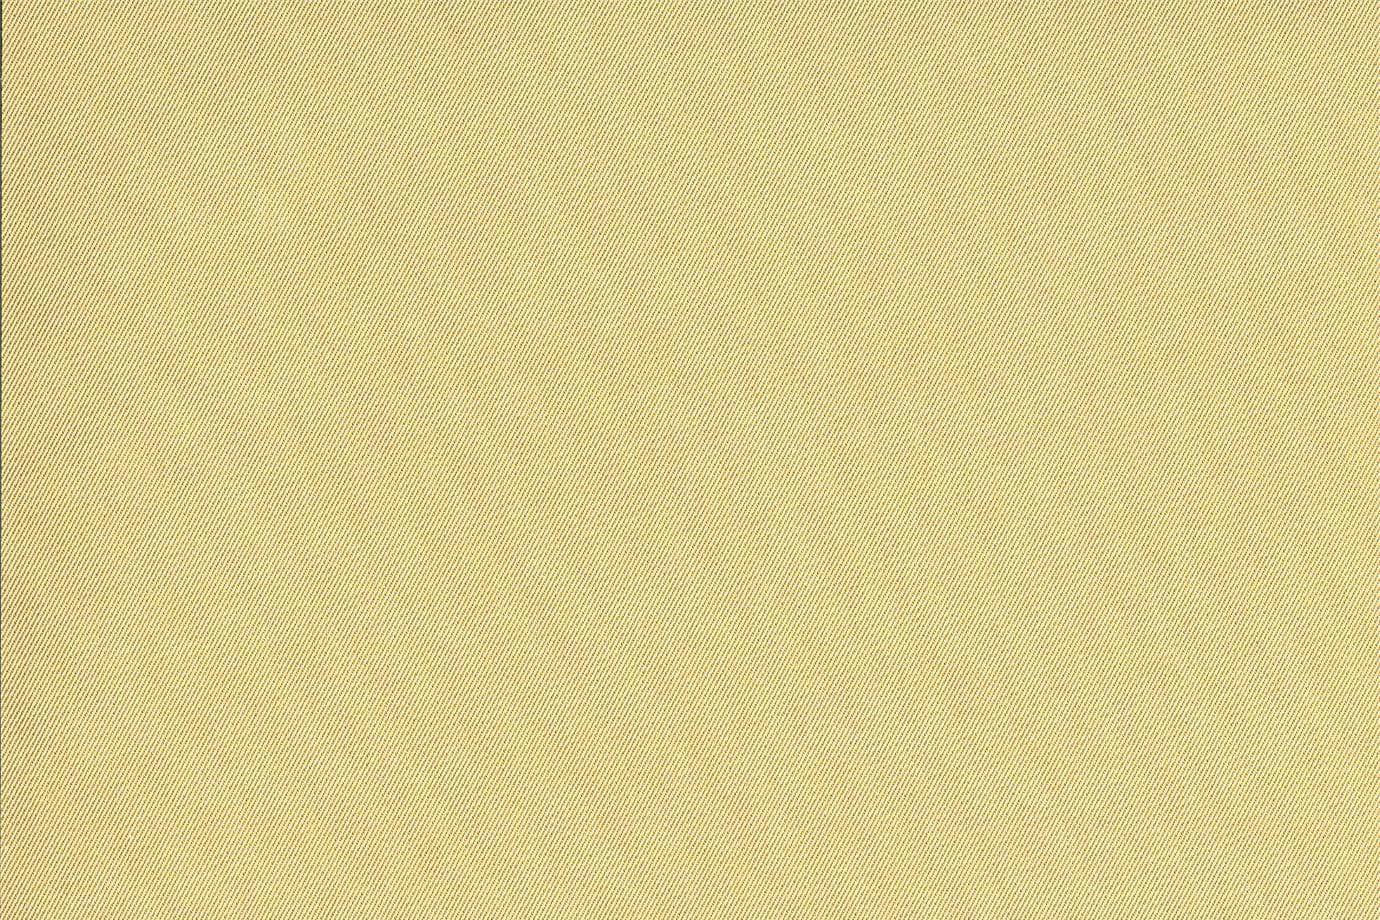 Tessuto per arredamento J1639 ZANNI 004 Des.ch.-sabbia